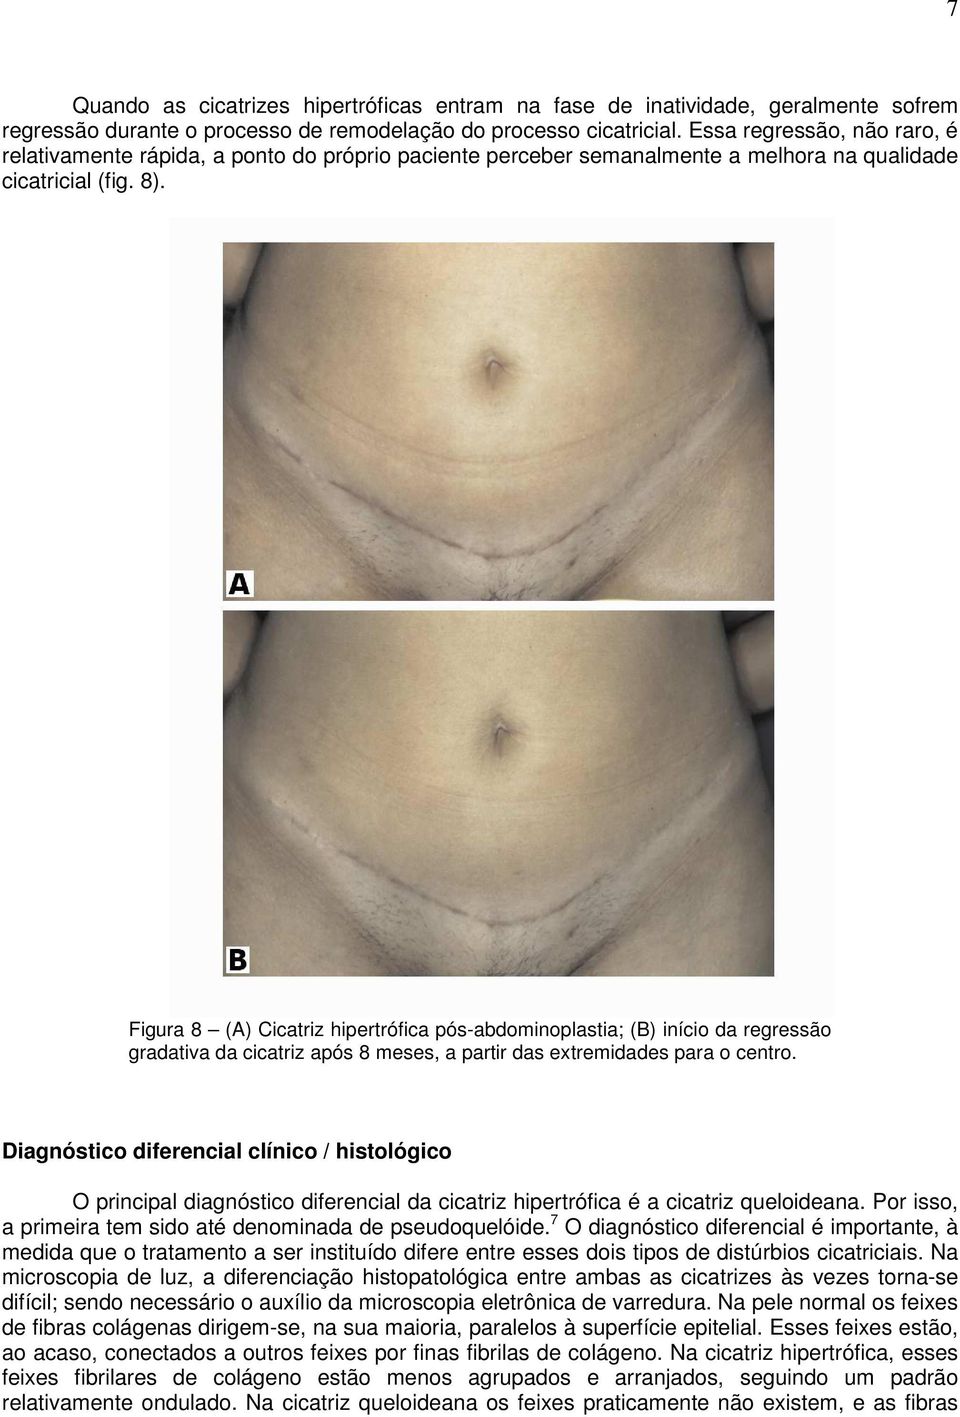 Figura 8 (A) Cicatriz hipertrófica pós-abdominoplastia; (B) início da regressão gradativa da cicatriz após 8 meses, a partir das extremidades para o centro.